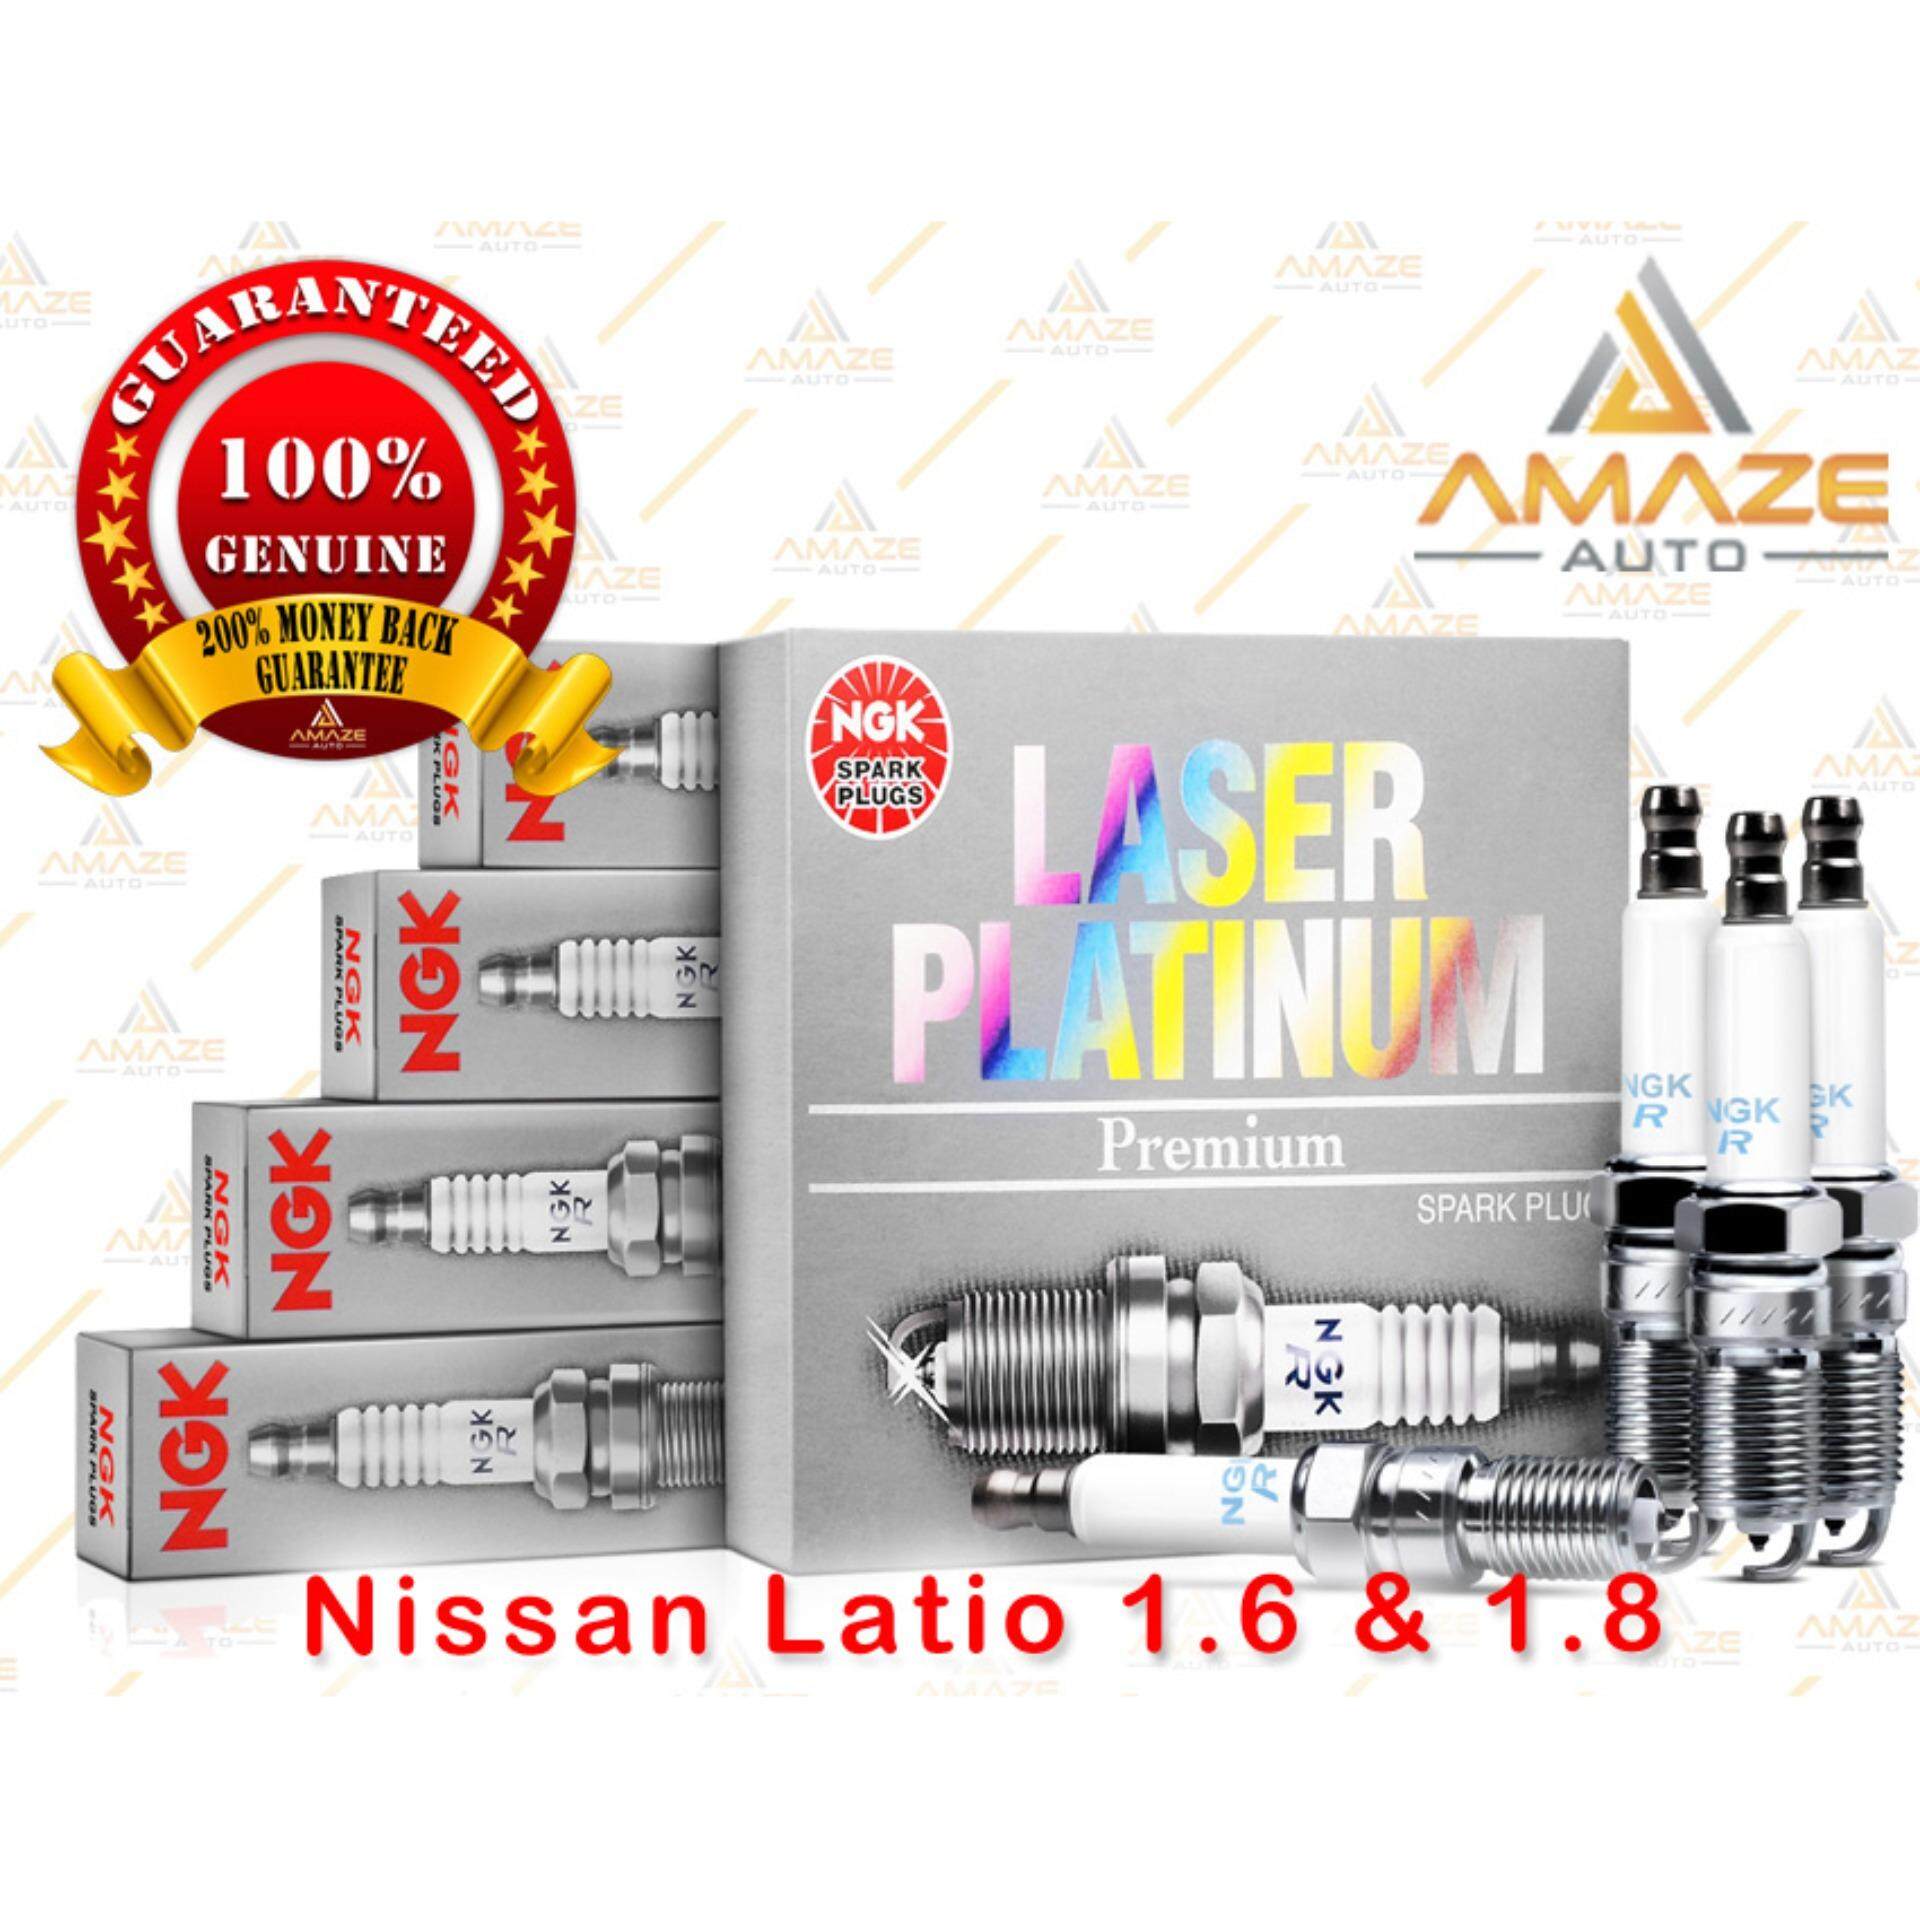 NGK Laser Platinum Spark Plug for Nissan Latio 1.6 & 1.8